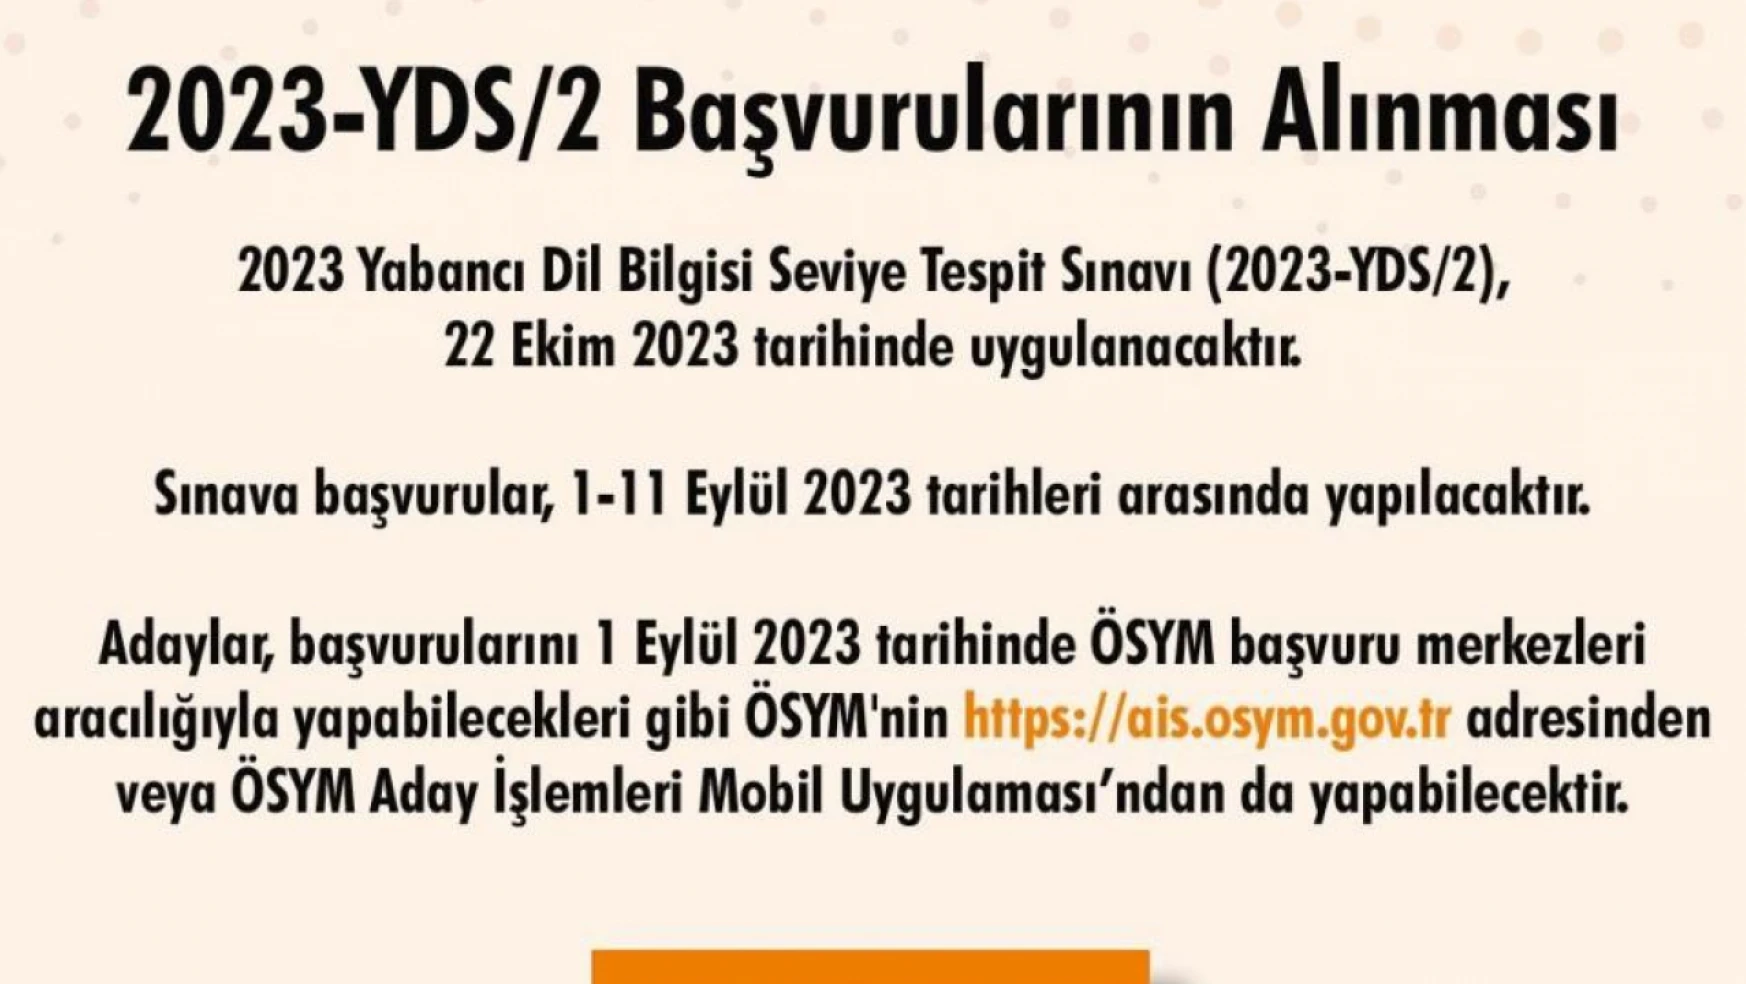 2023-YDS/2 başvuruları başladı